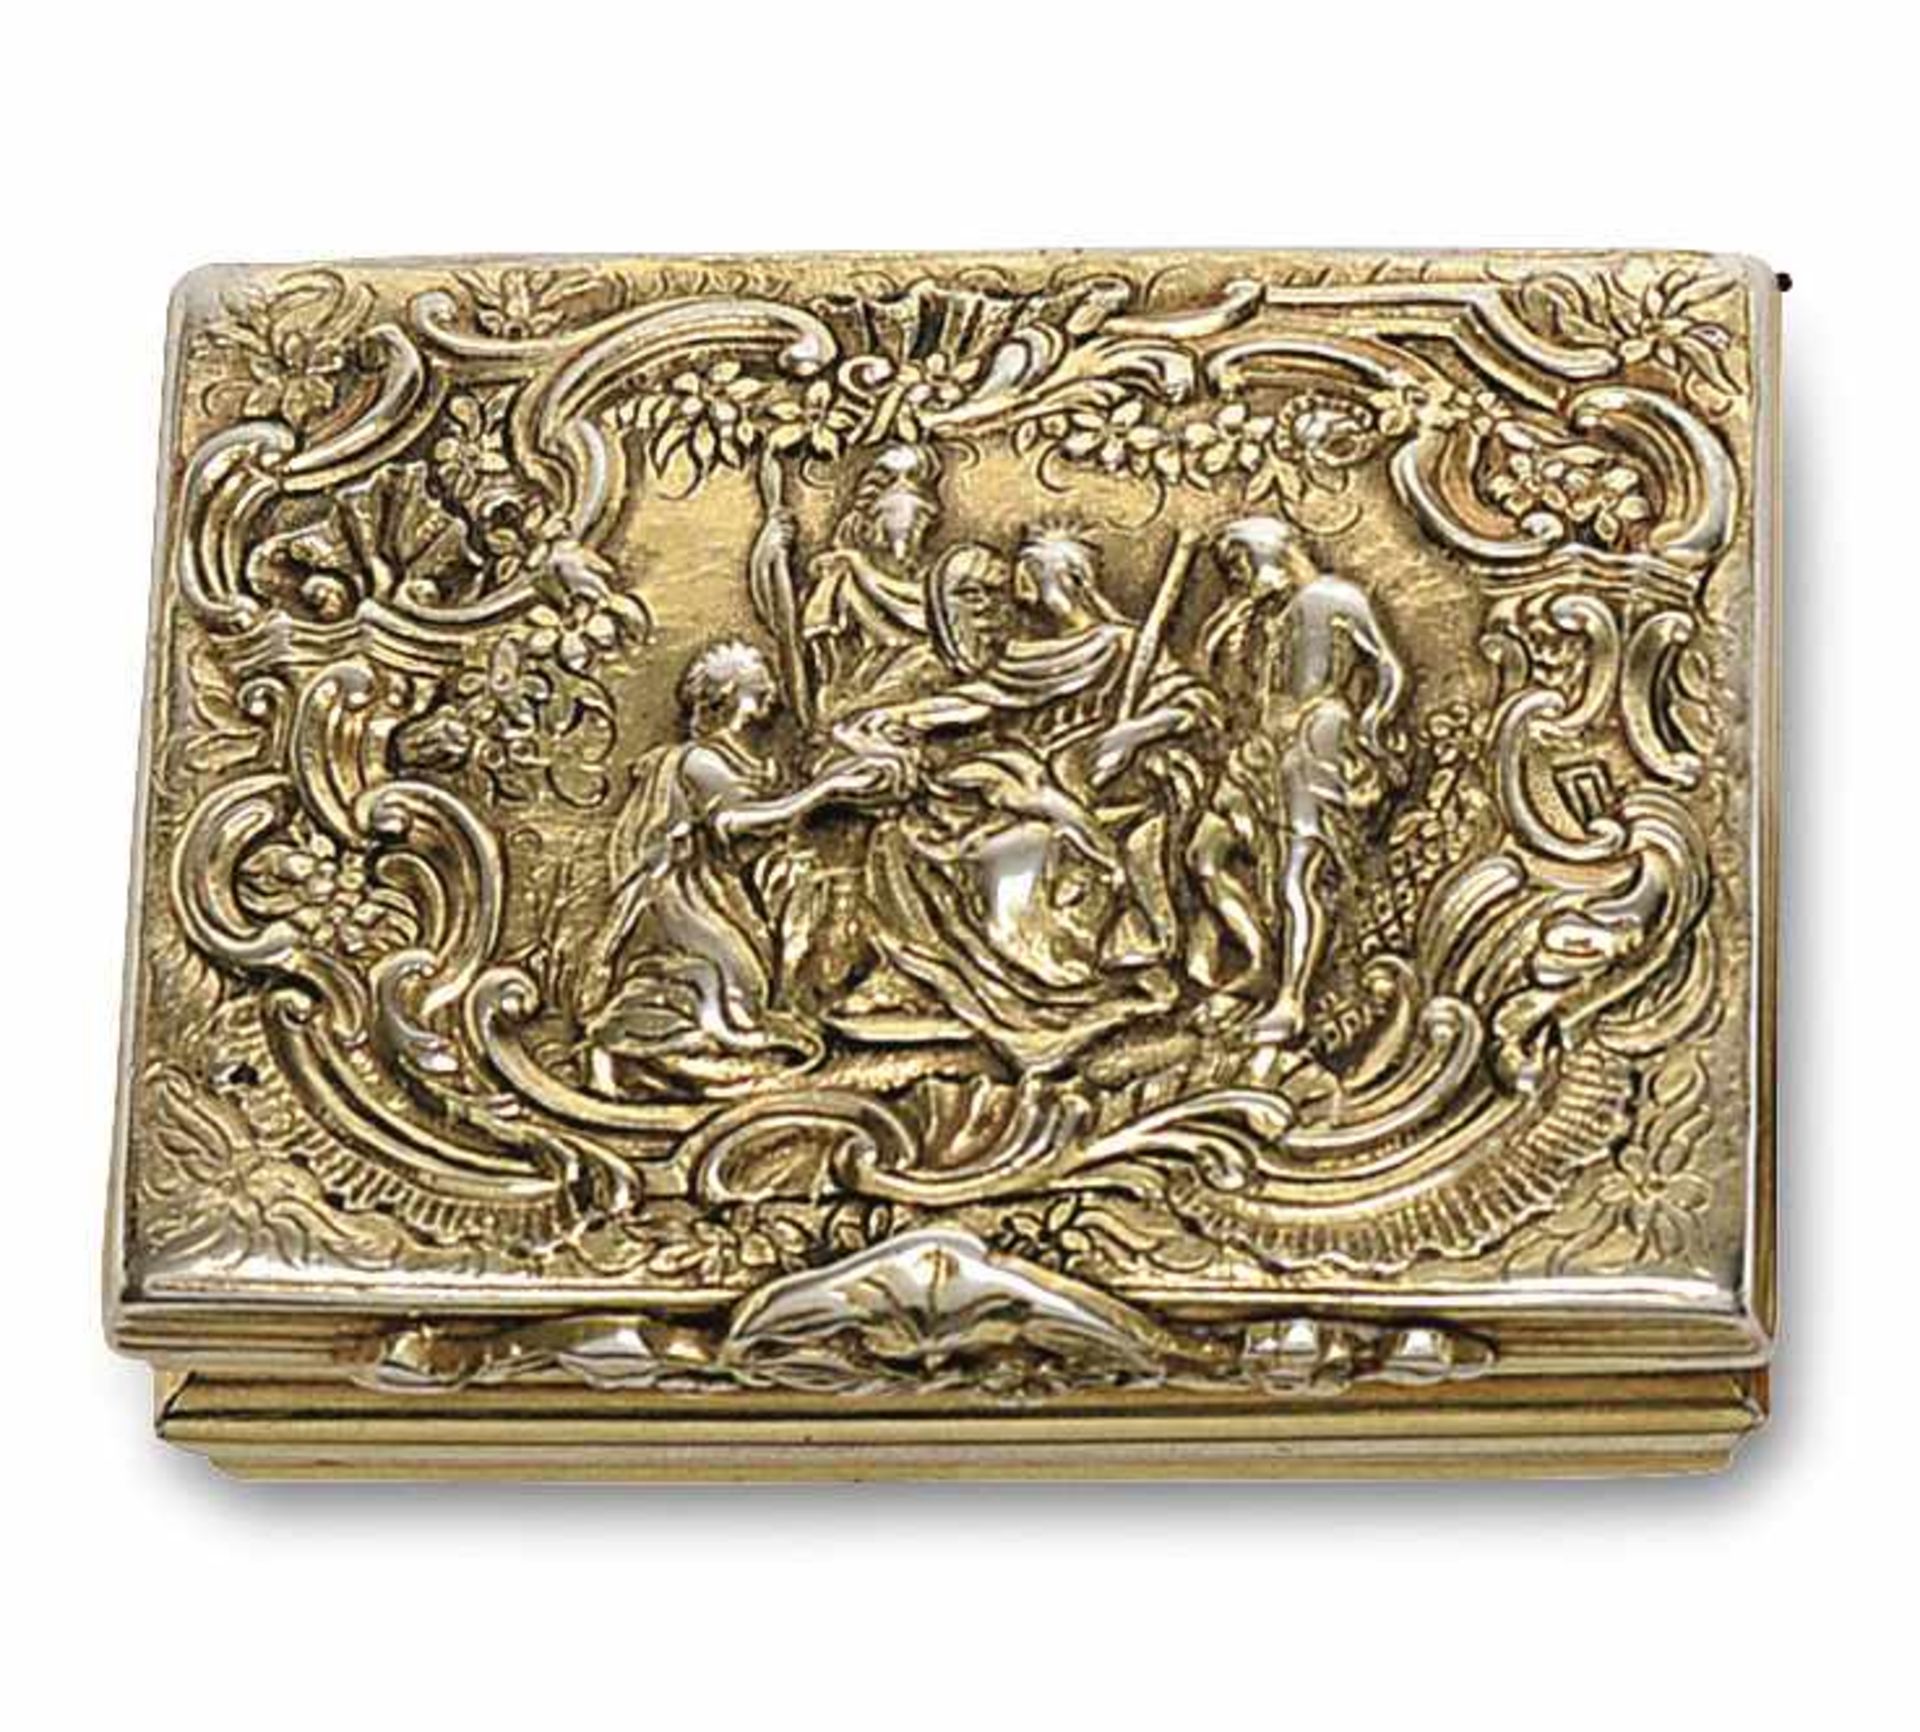 Tabatière 2. Hälfte 18. Jh. Silber, vergoldet. Auf dem Deckel reliefierte figürliche Szene in